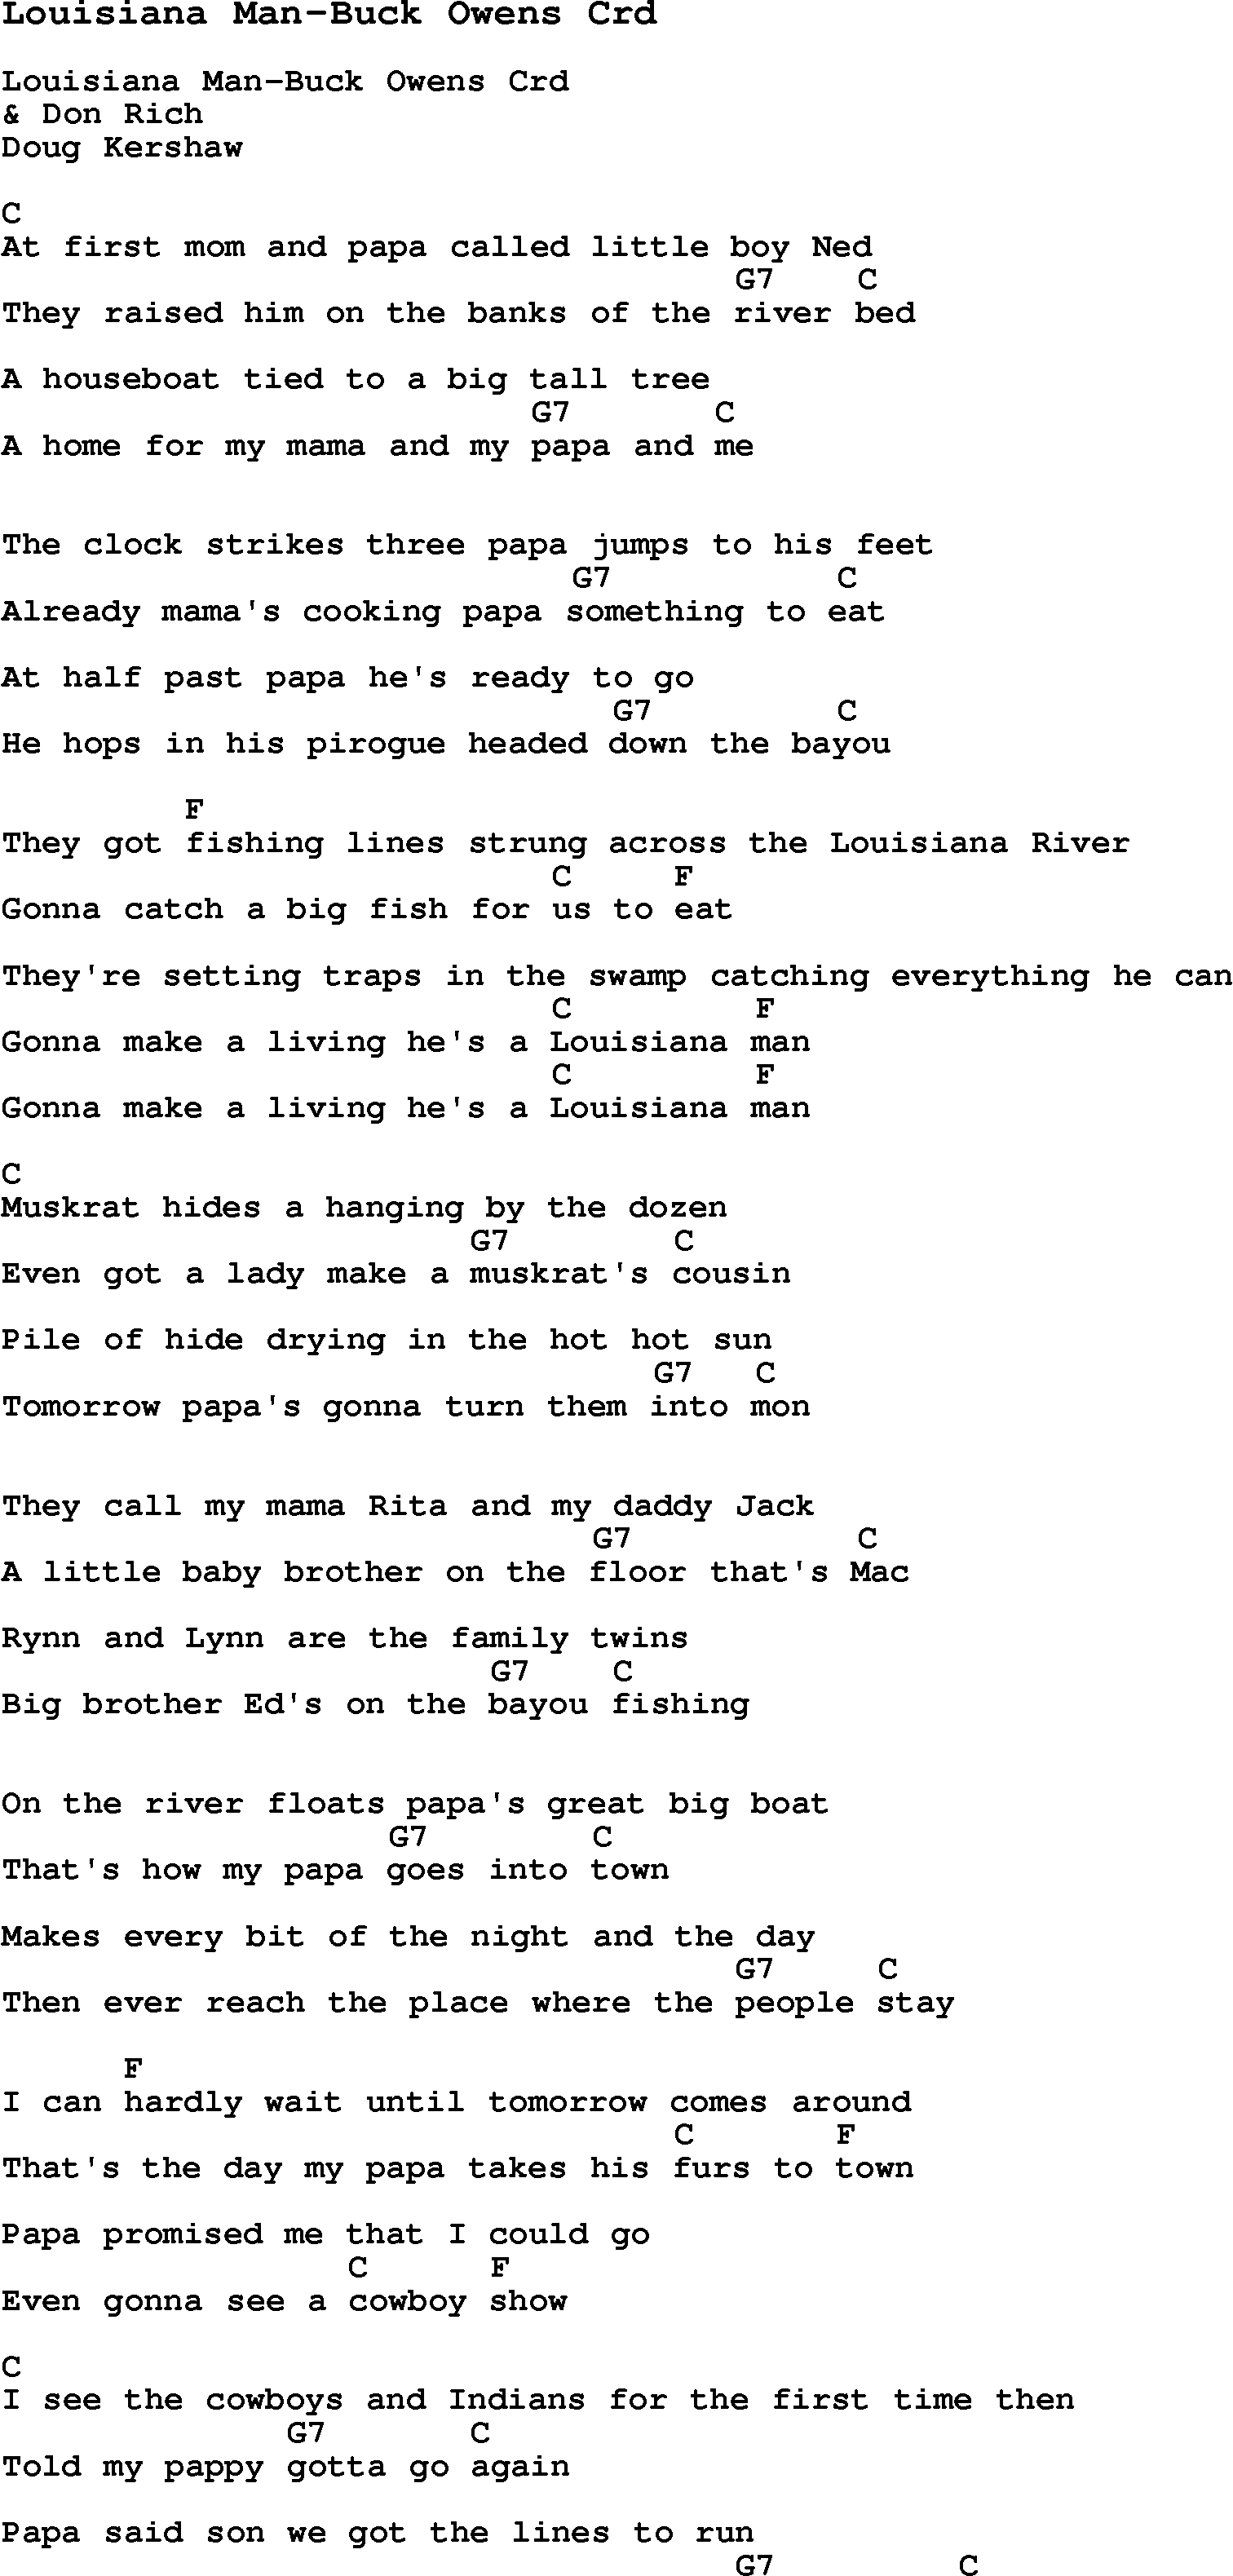 Skiffle Song Lyrics for Louisiana Man-Buck Owens with chords for Mandolin, Ukulele, Guitar, Banjo etc.